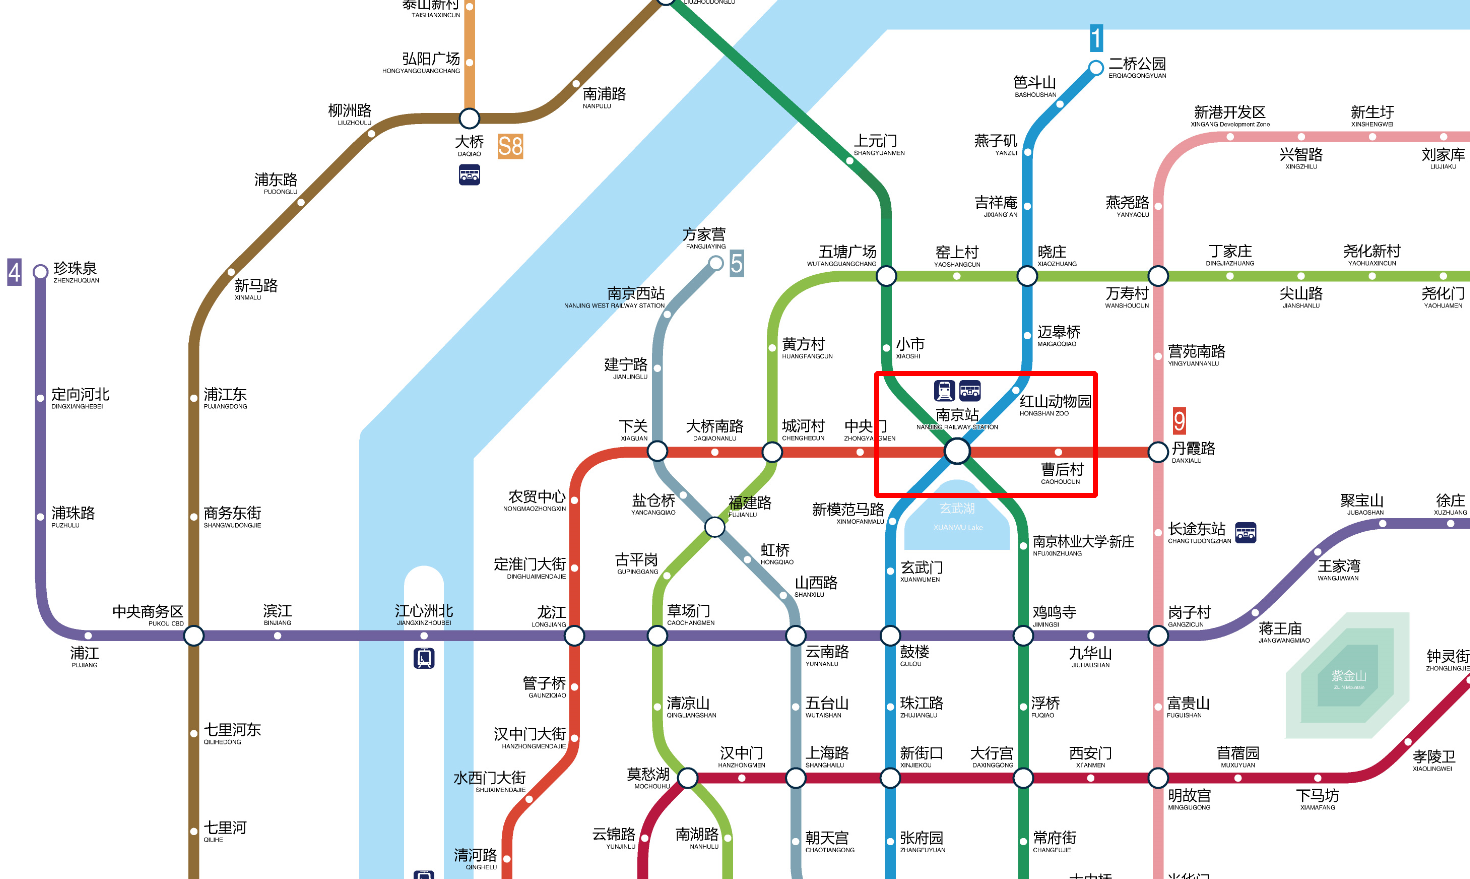 南京铁路线路图图片